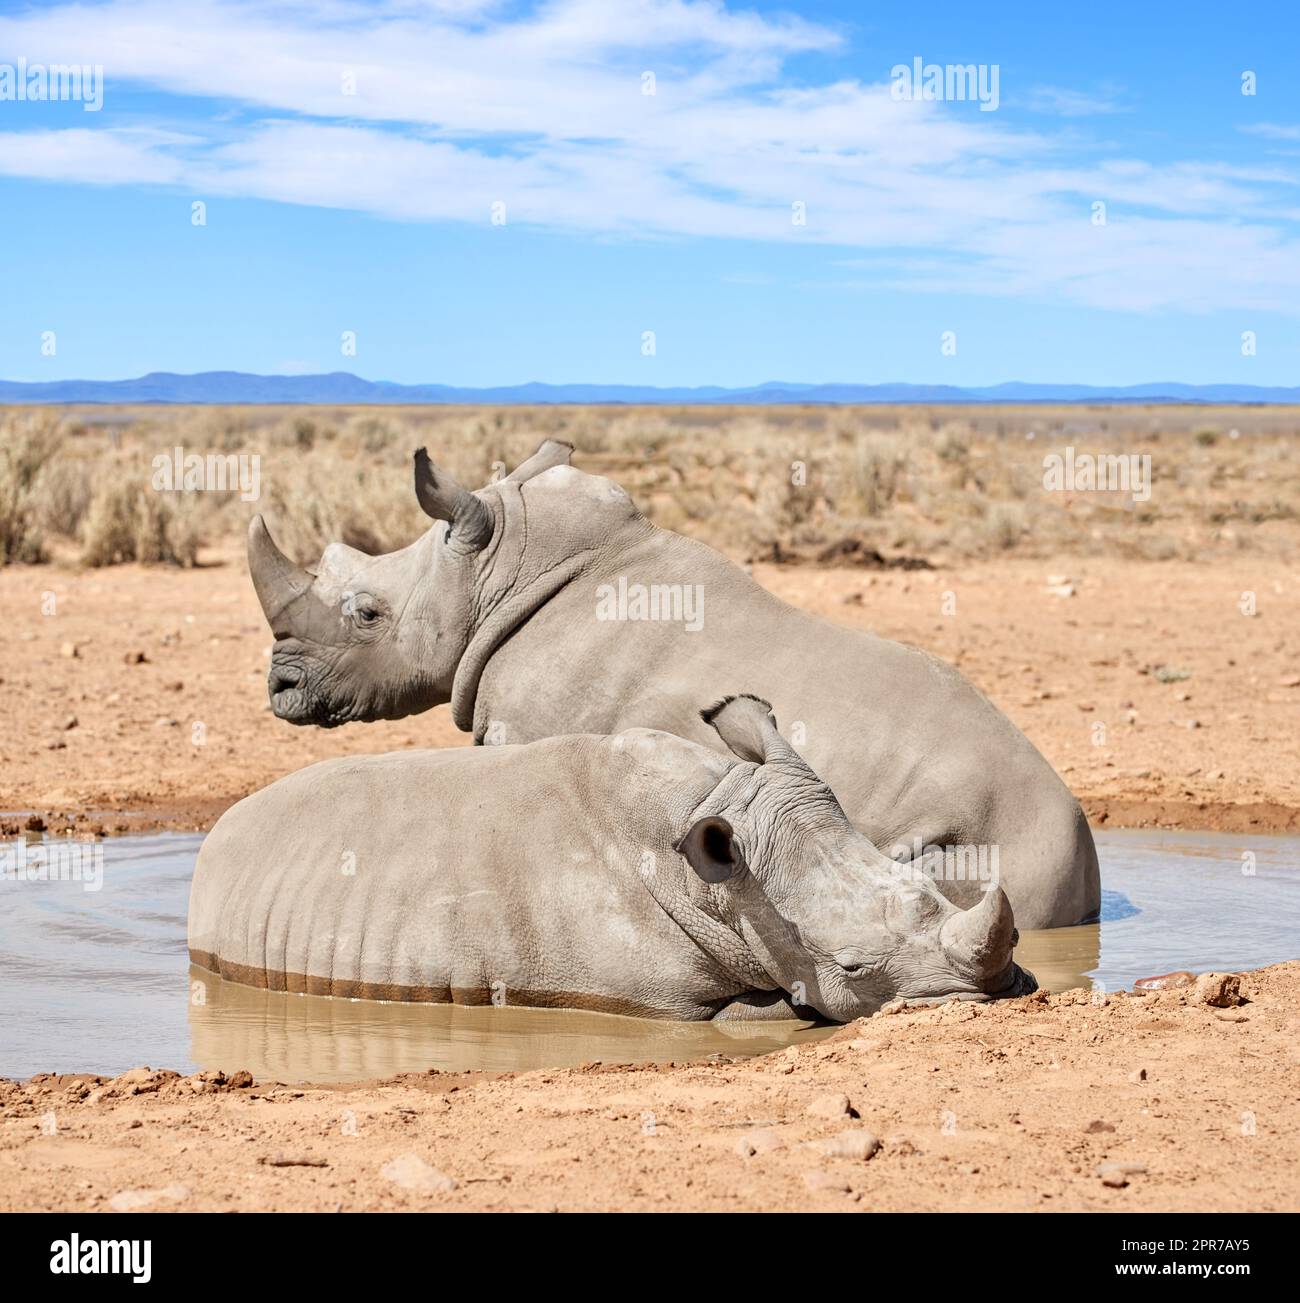 Deux rhinocéros noirs qui prennent un bain de boue dans une réserve naturelle de sable sec dans une zone de safari chaude en Afrique. Protéger les rhinocéros africains menacés contre les braconniers et les chasseurs et l'exploitation des cornes Banque D'Images